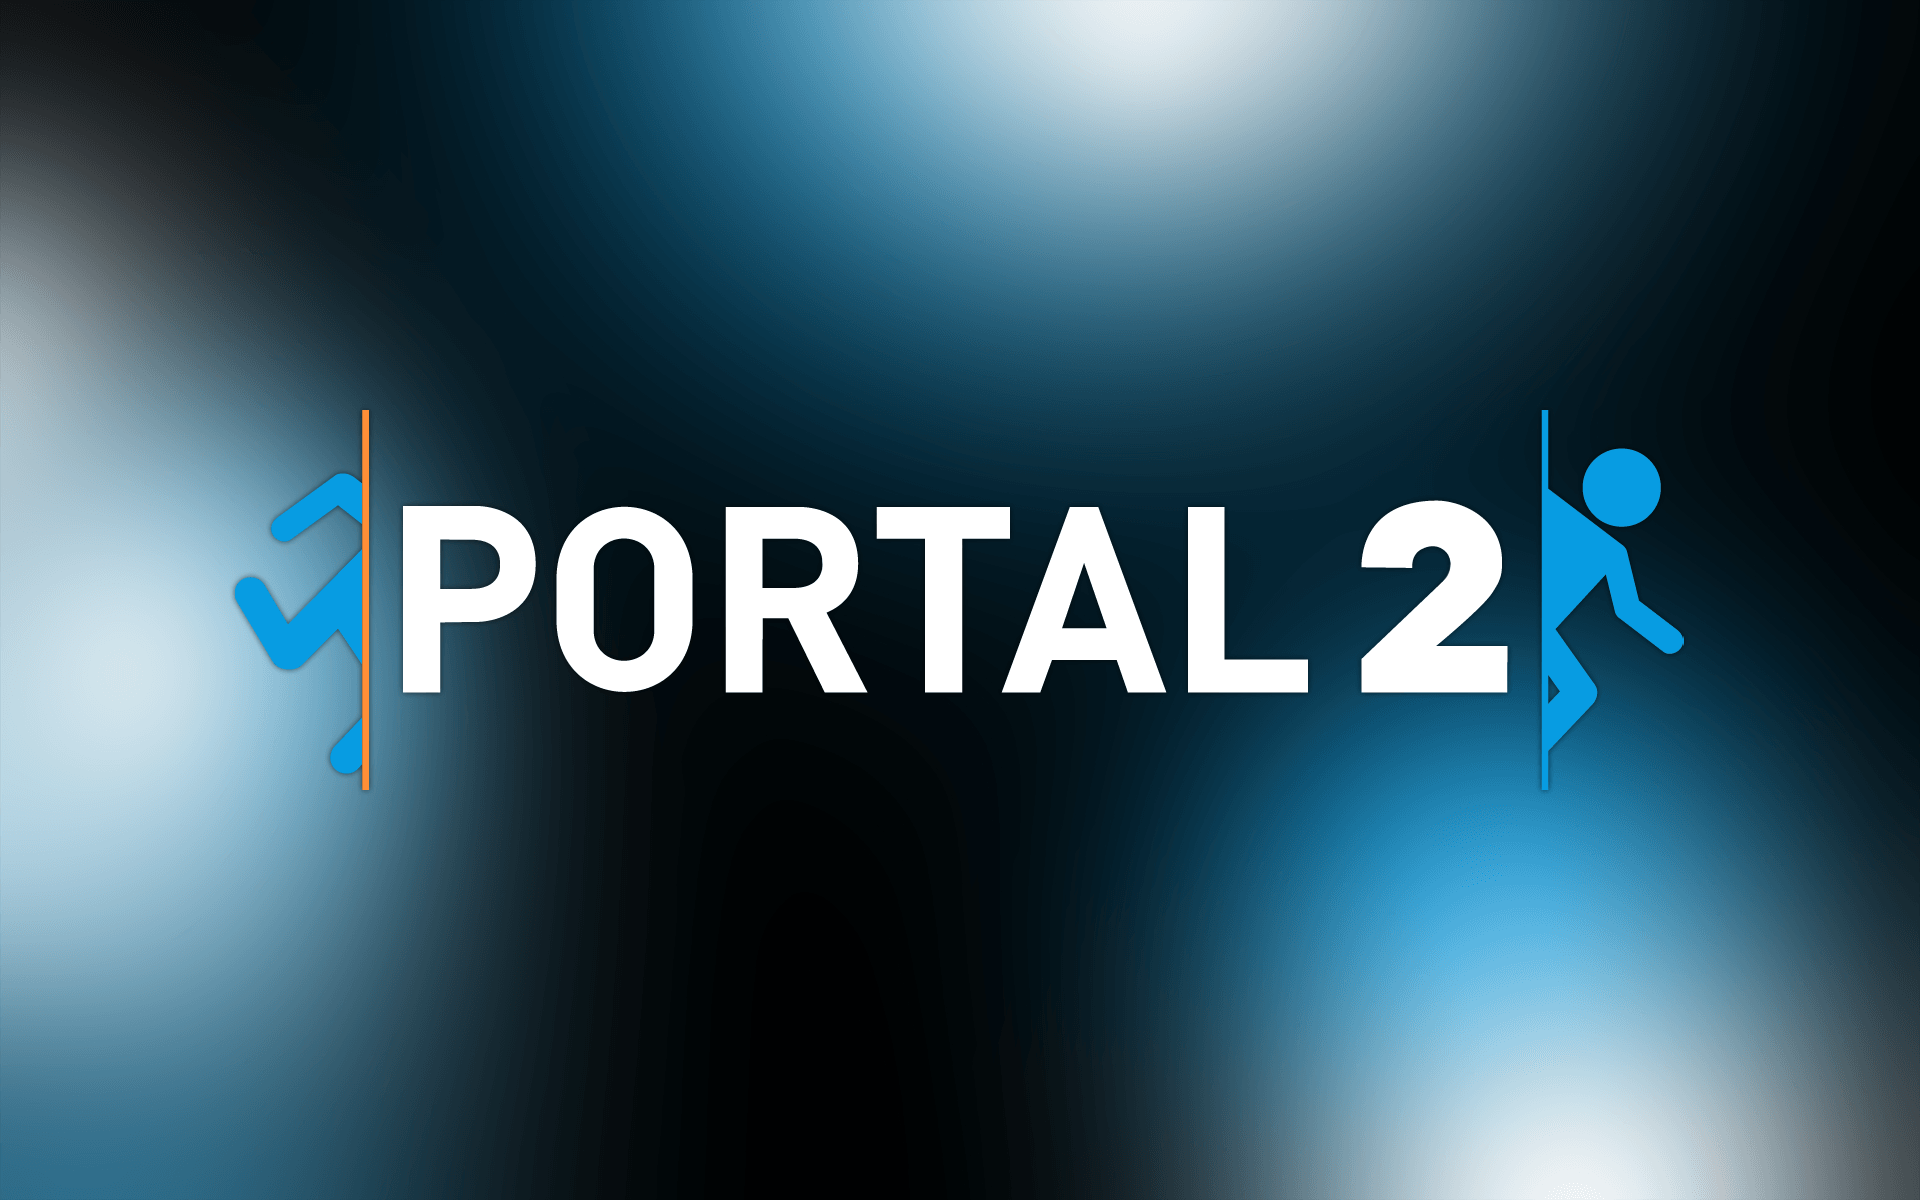 Portal2 Wallpaper HD wallpaper search